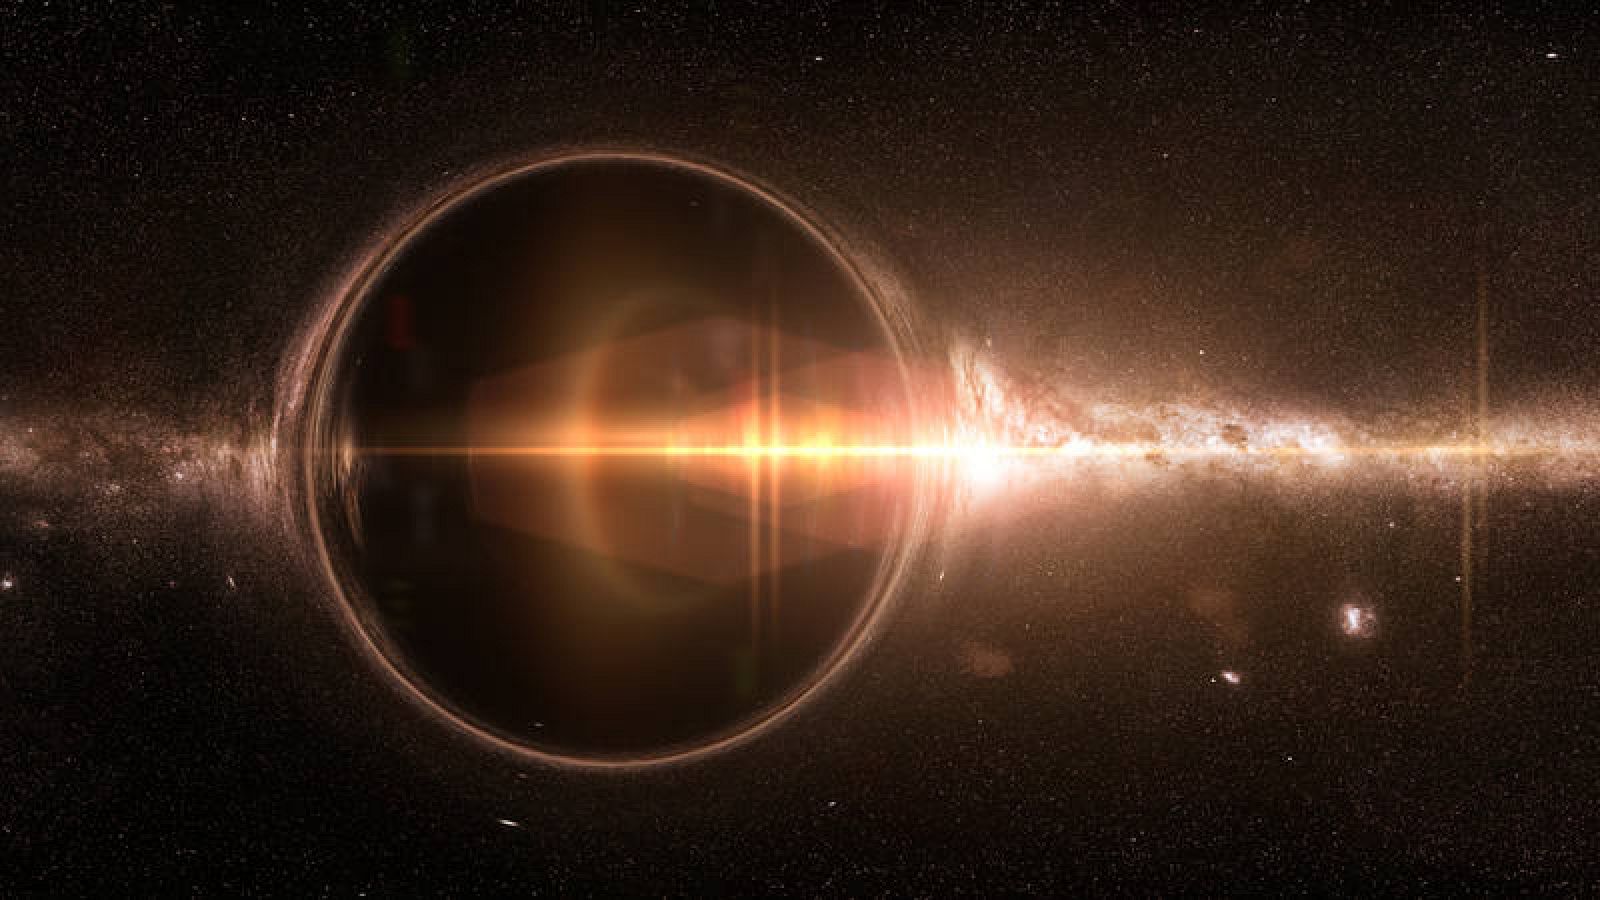 Detectan vientos de hasta 1.200 kilómetros por segundo producidos por un agujero  negro supermasivo - RTVE.es